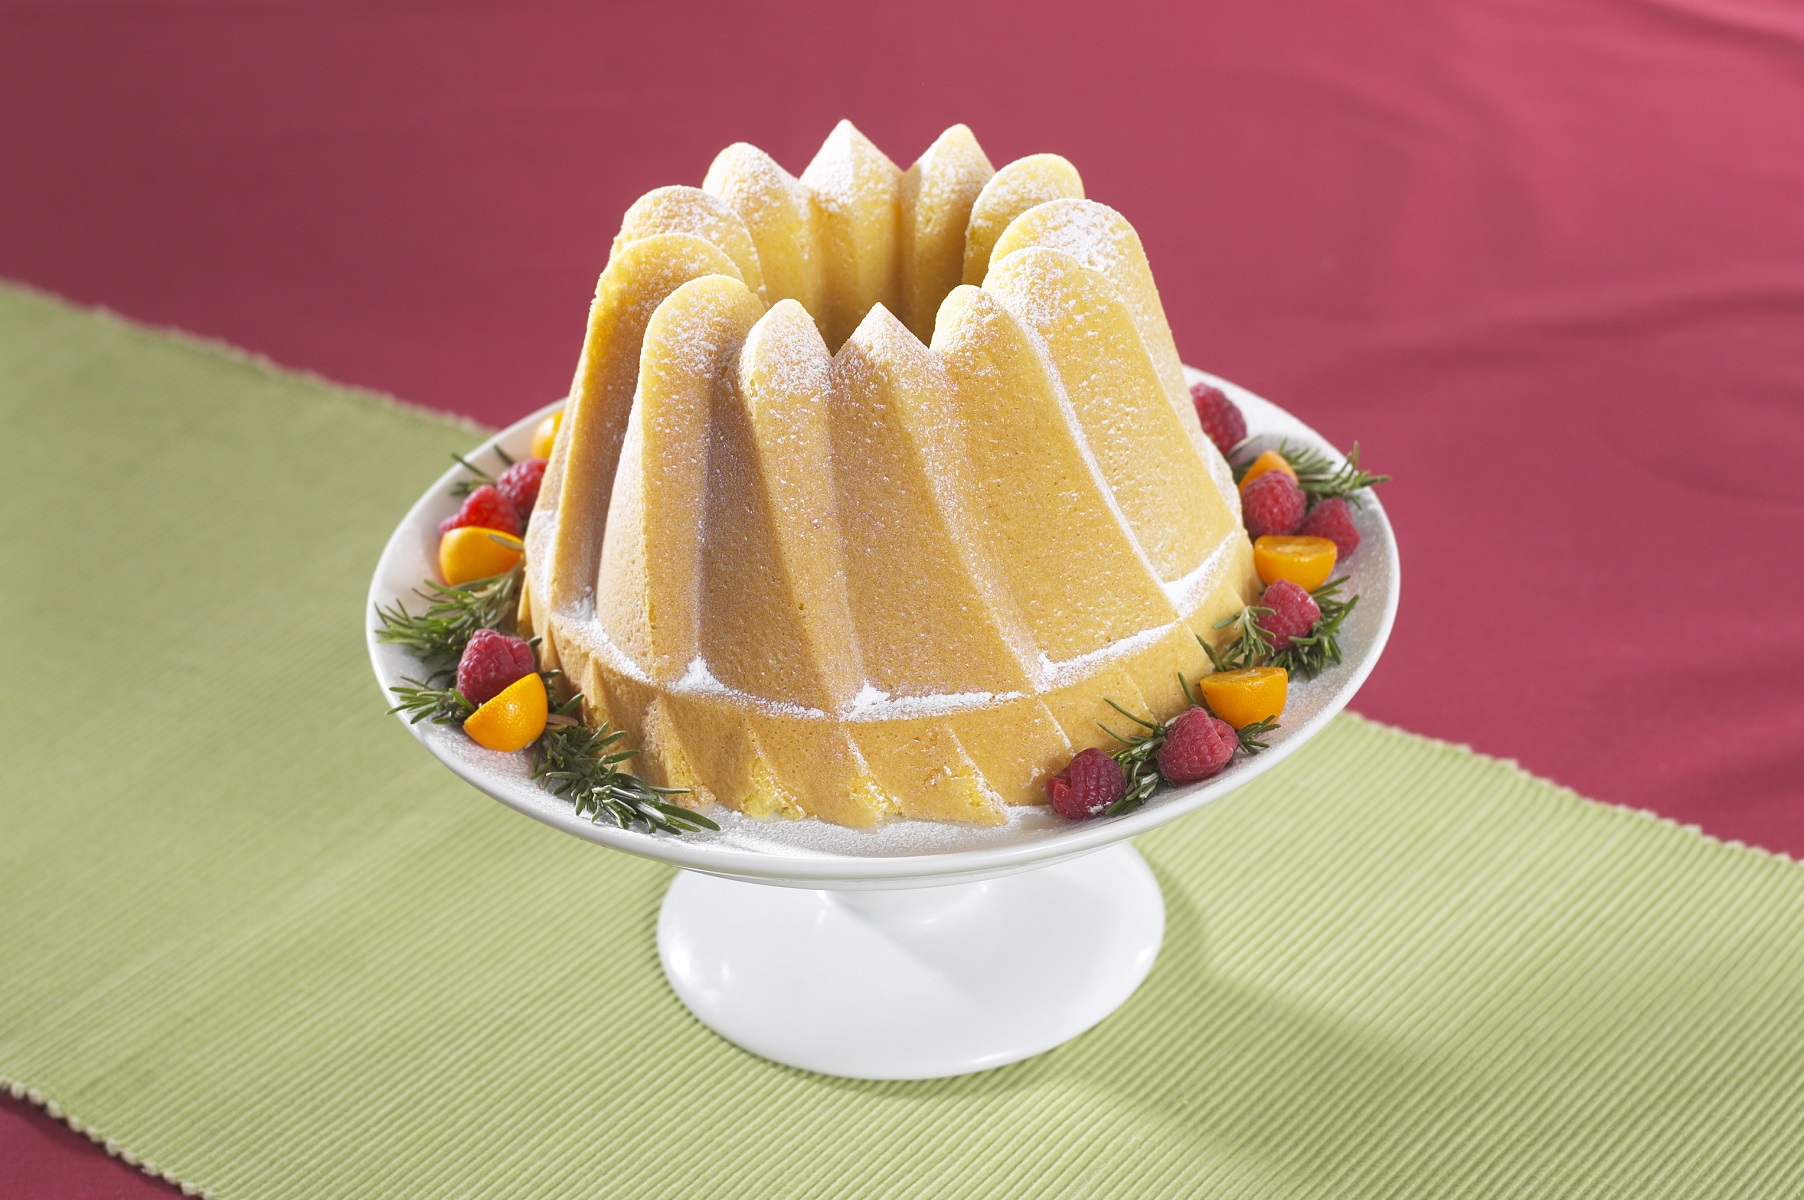 Nordic Ware - Kugelhopf Bundt Cake Pan